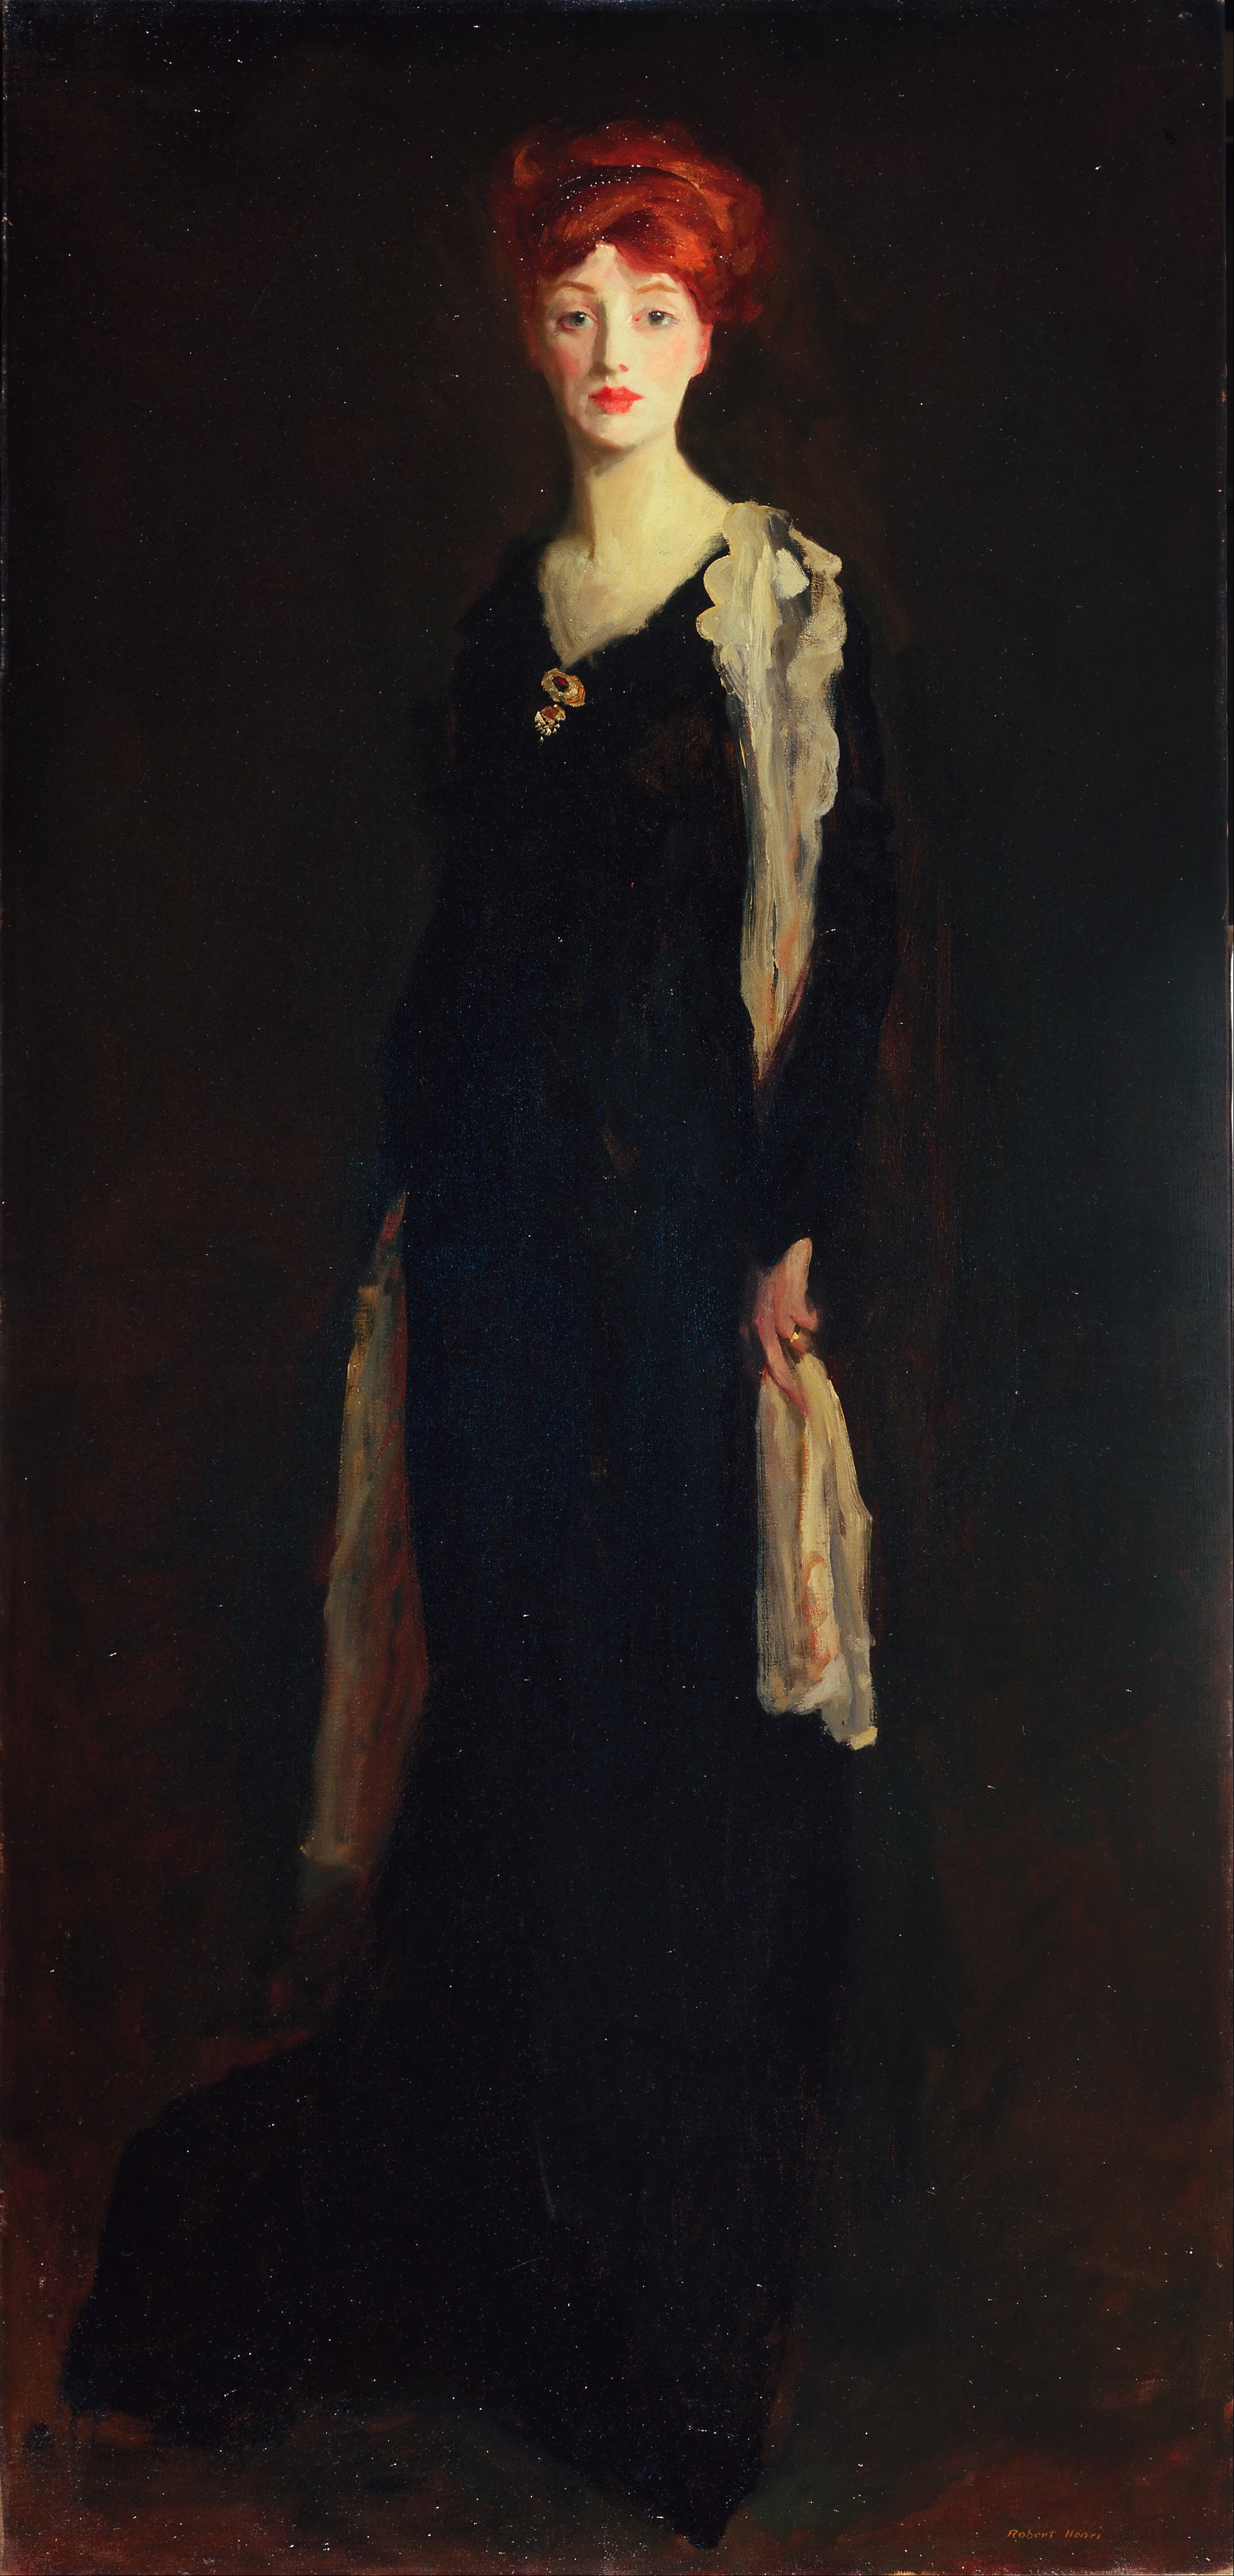 Femme en noir avec une écharpe espagnole (O en noir avec une écharpe) by Robert Henri - 1910 - 196.2 x 94 cm de Young Museum